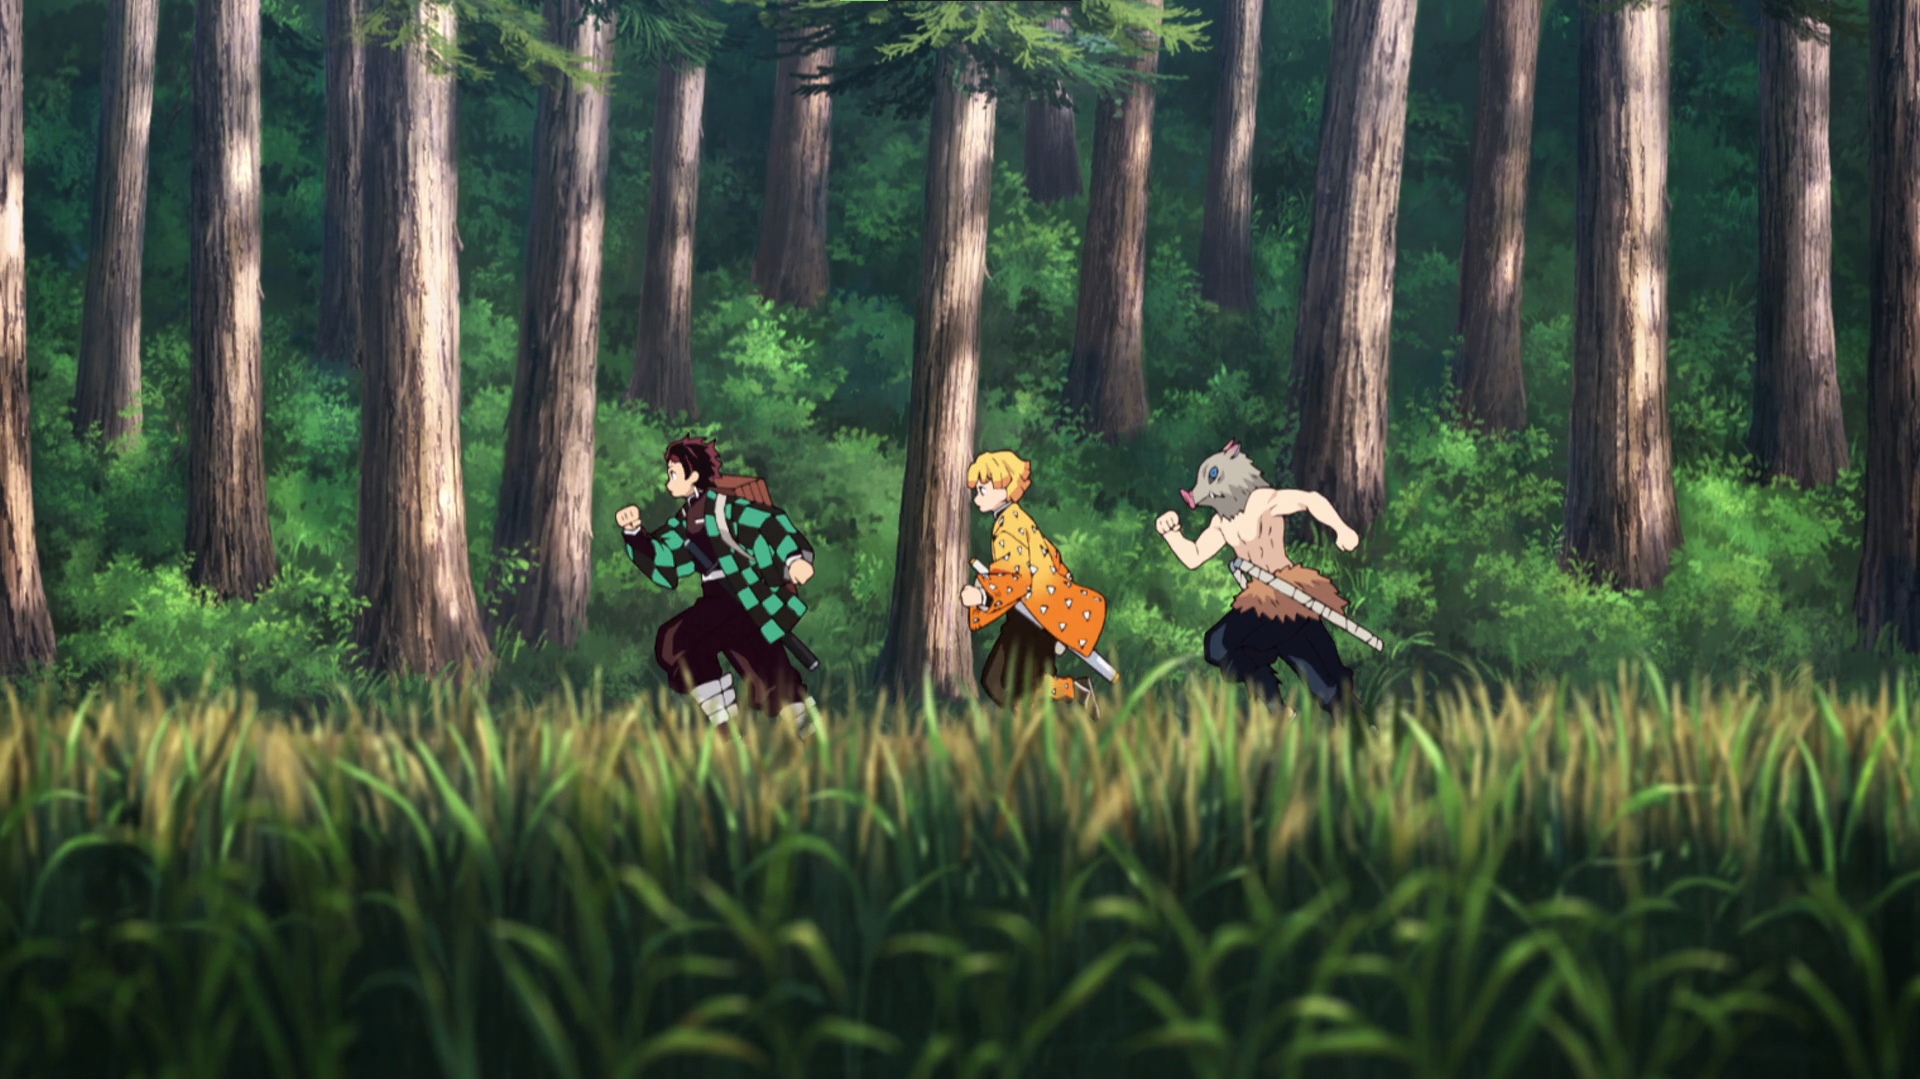 Kimetsu No Yaiba Kamado Tanjiro Inosuke Hashibira Zenitsu Agatsuma Running Sword Forest Trees Anime  1920x1079